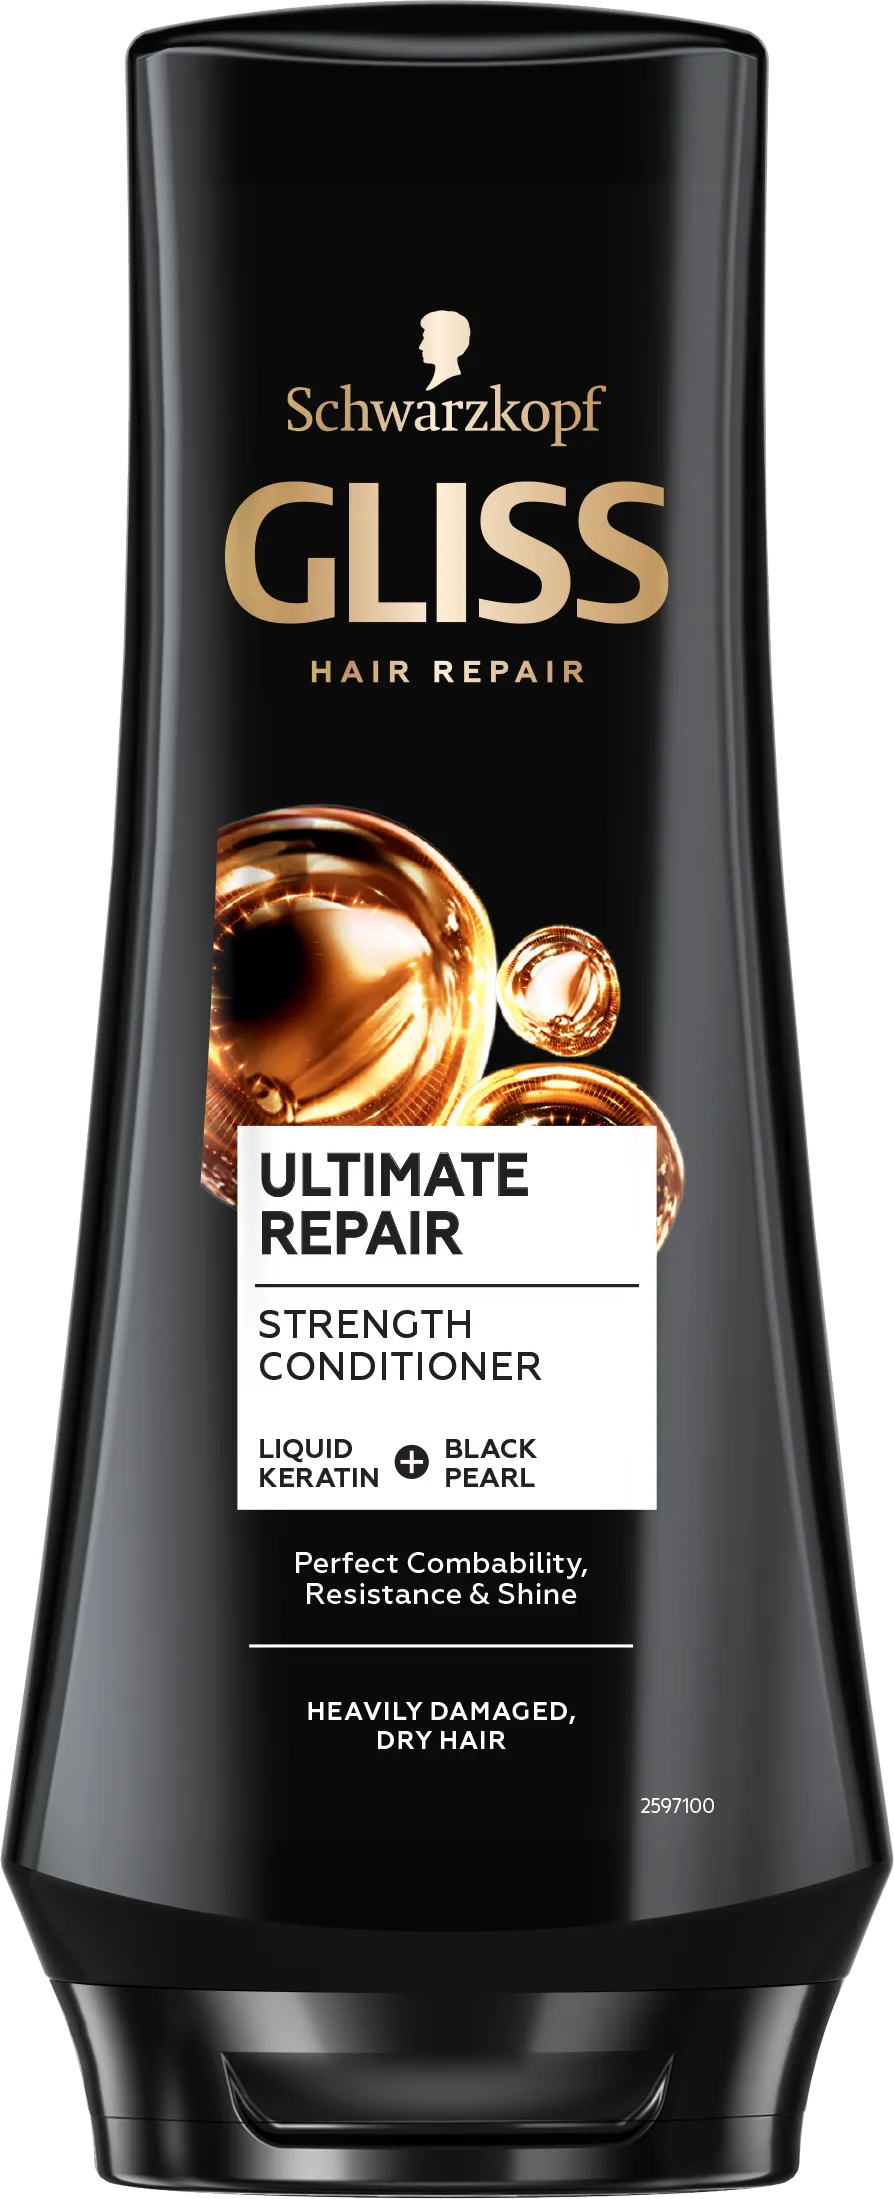 Schwarzkopf Gliss Kur Ultimate Repair Odżywka do włosów, 200 ml